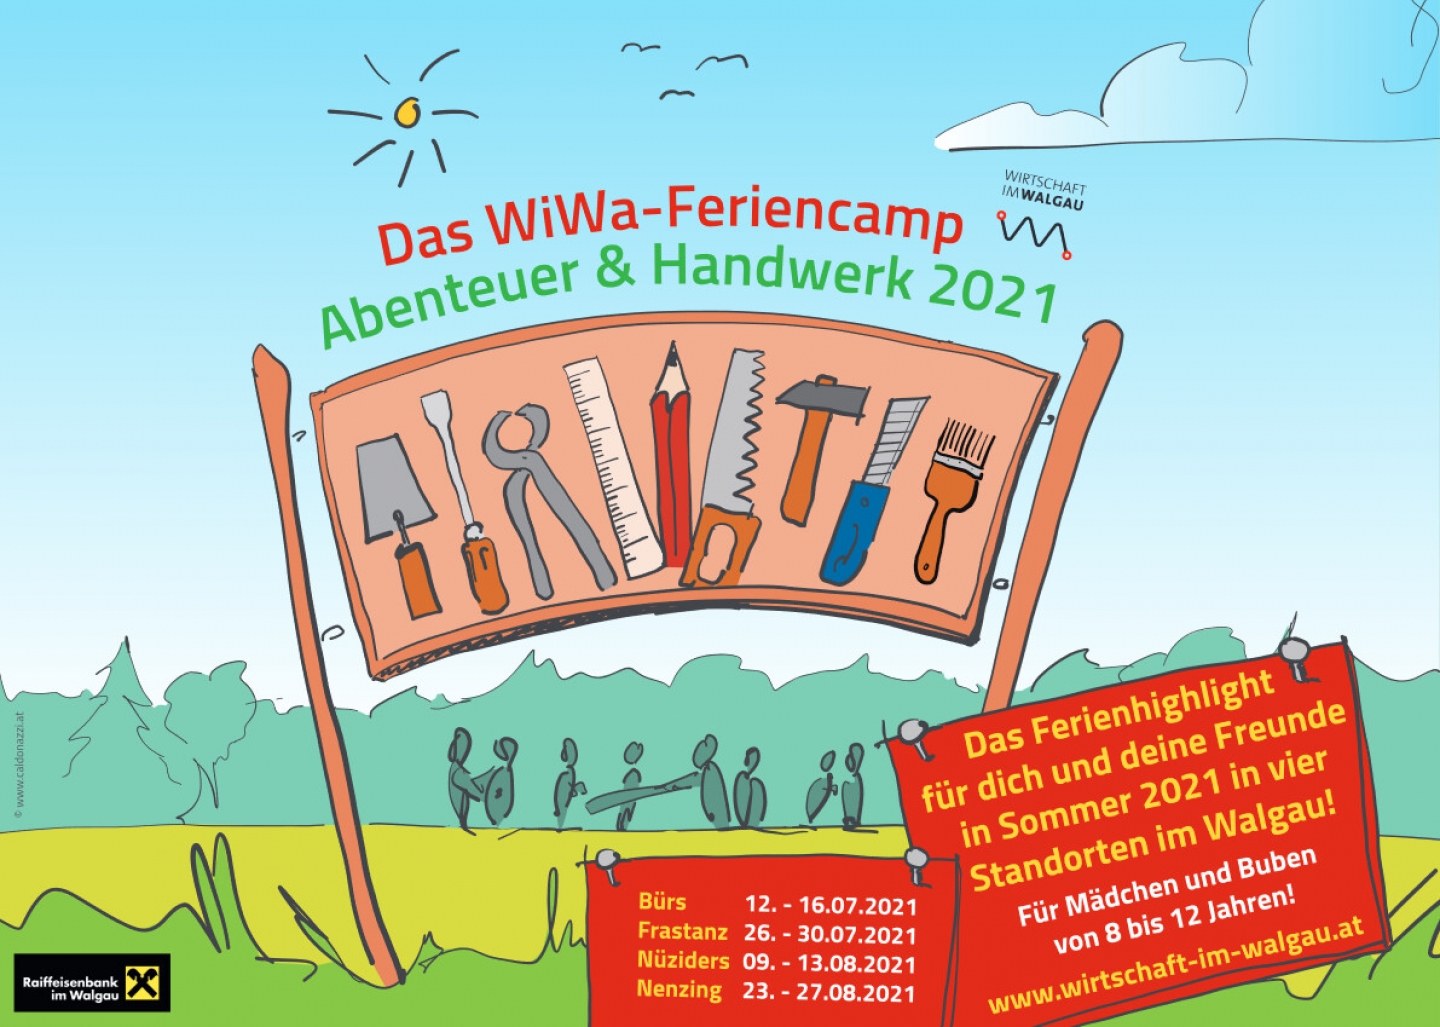 WiWa-Feriencamp "Abenteuer & Handwerk" 2021 | Wirtschaft ...